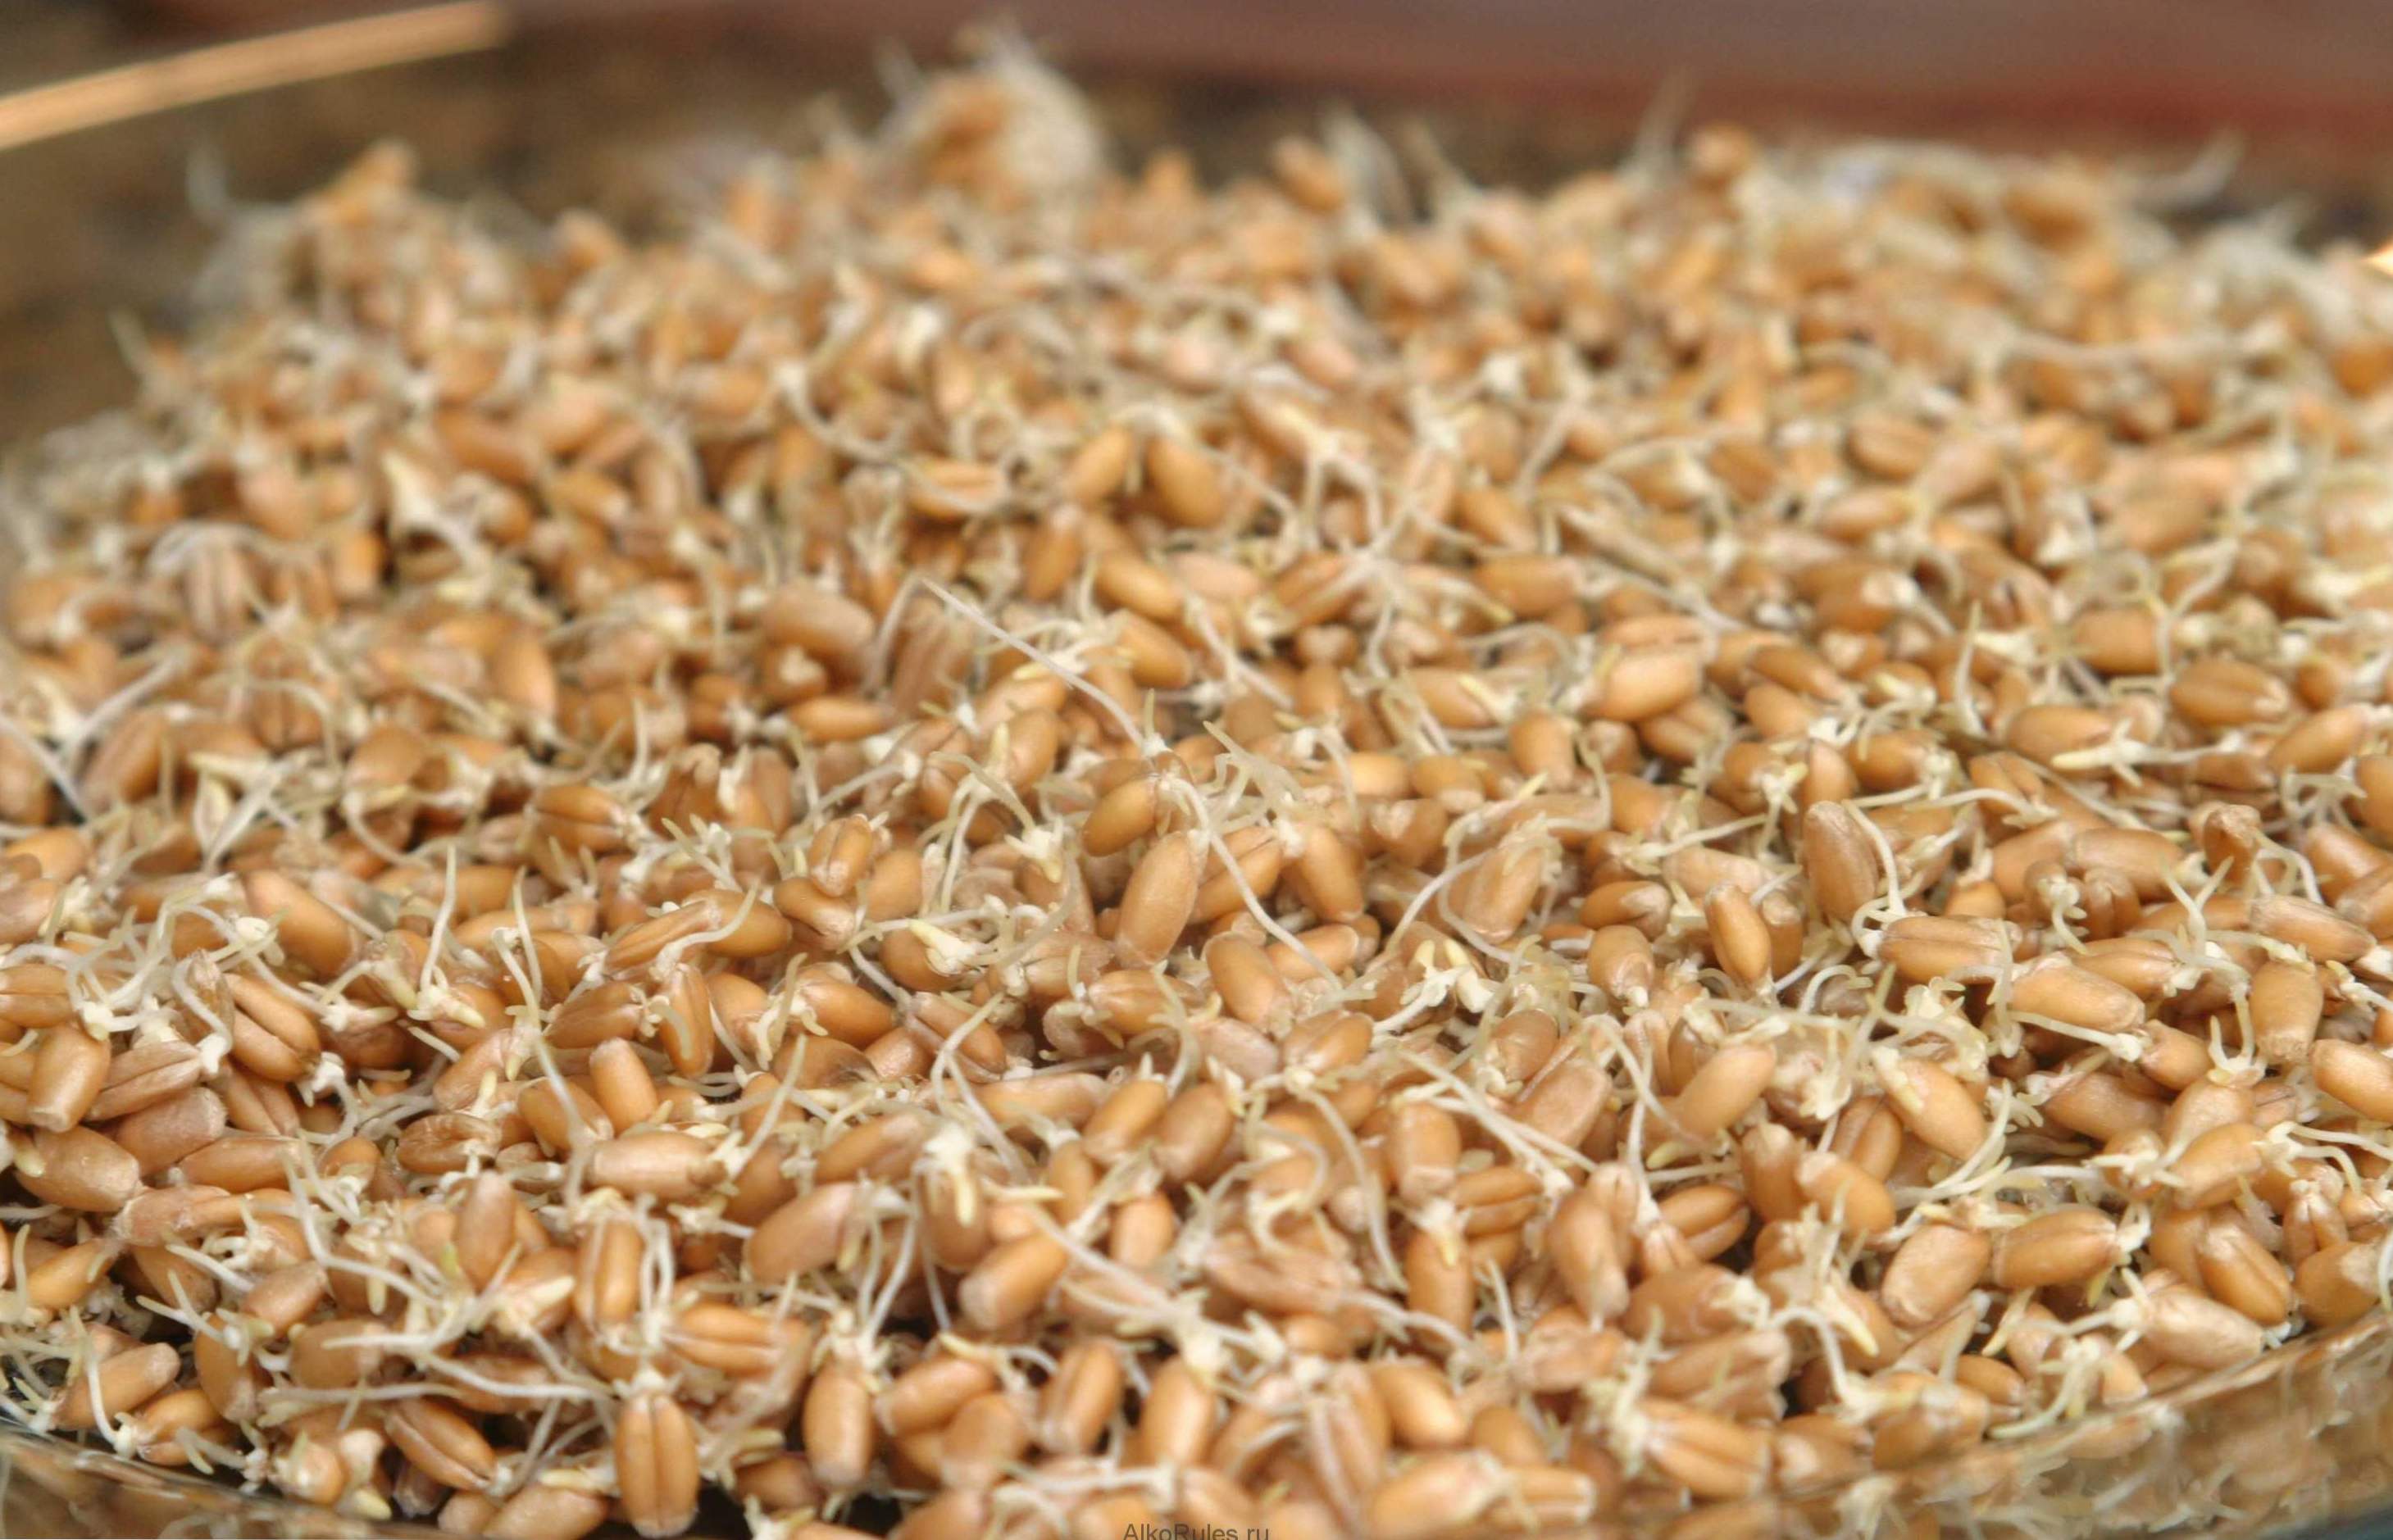 Pražena žita - koristi in škoda, kako kaliti in uporabljati doma?